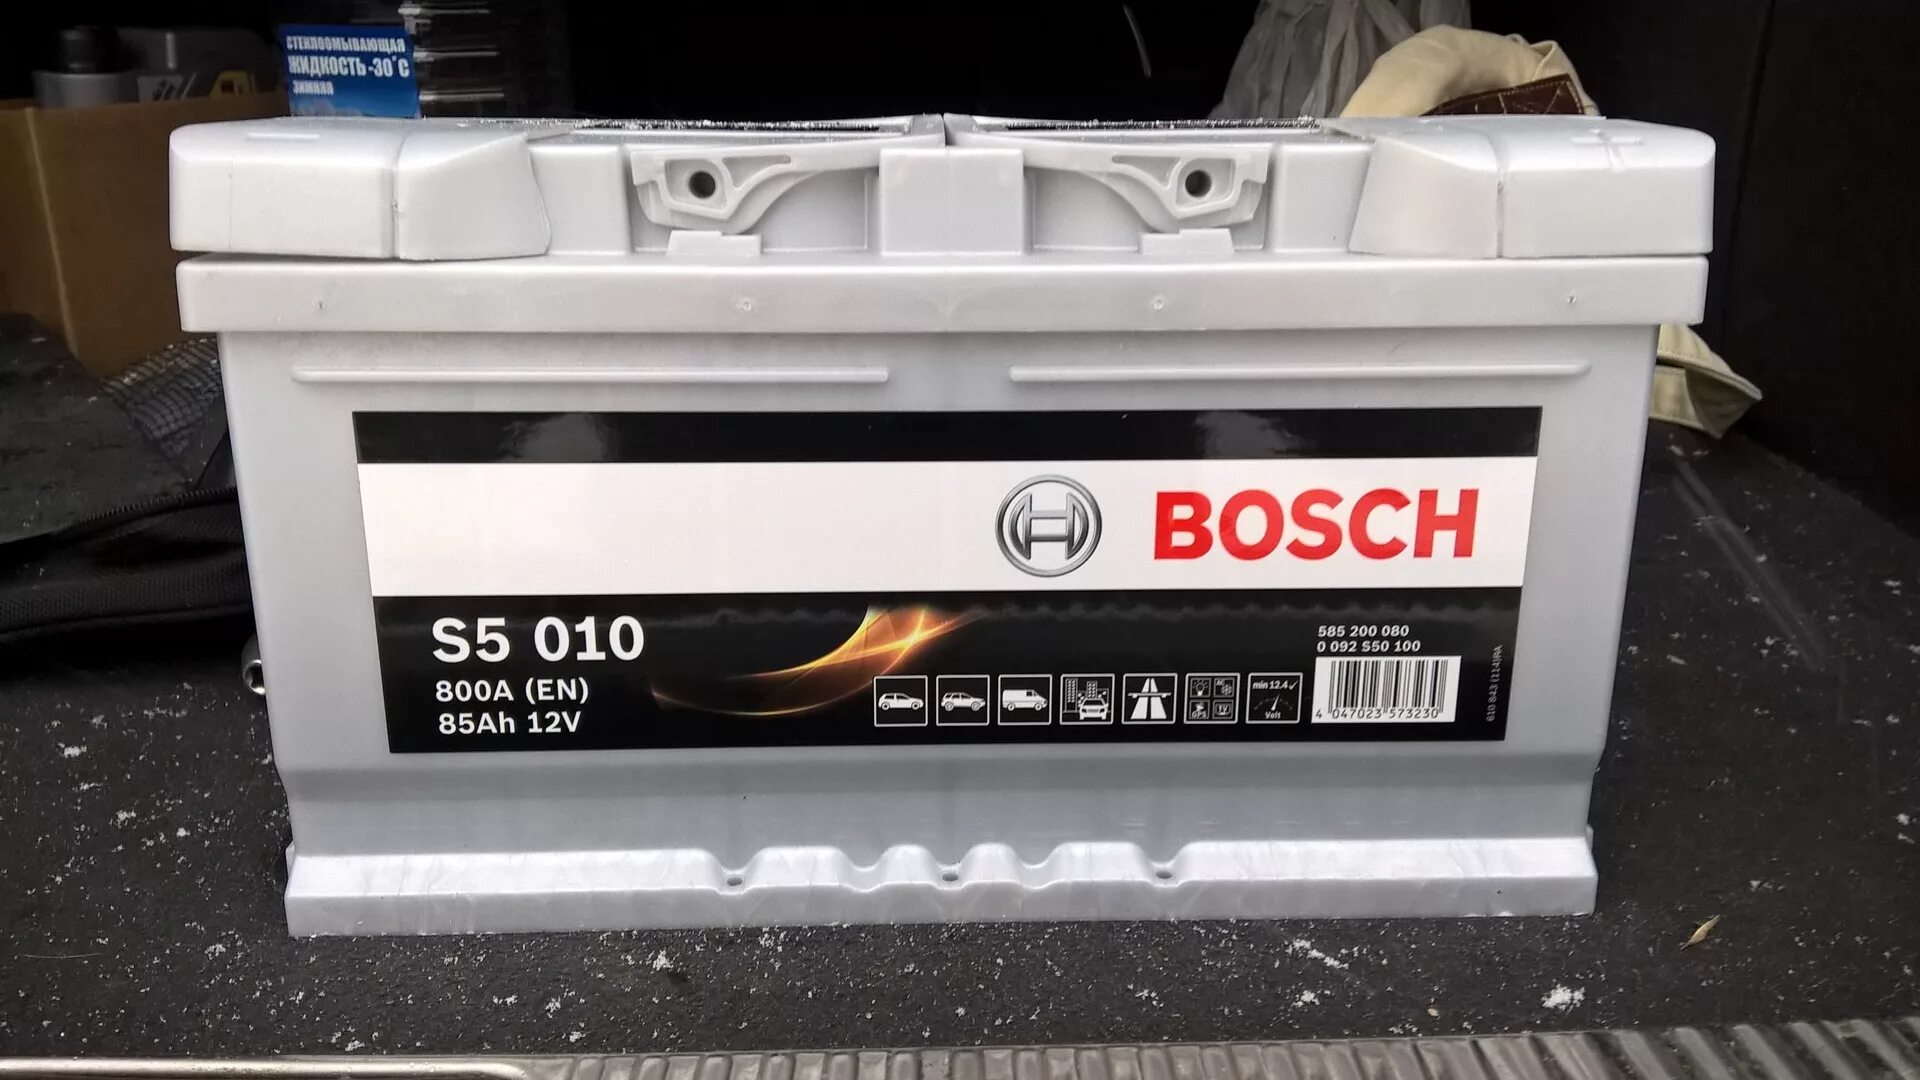 200 10 92. Bosch 0092s40250. 0092s40100 Bosch. 0092s40290 Bosch. 0092s40210 Bosch.